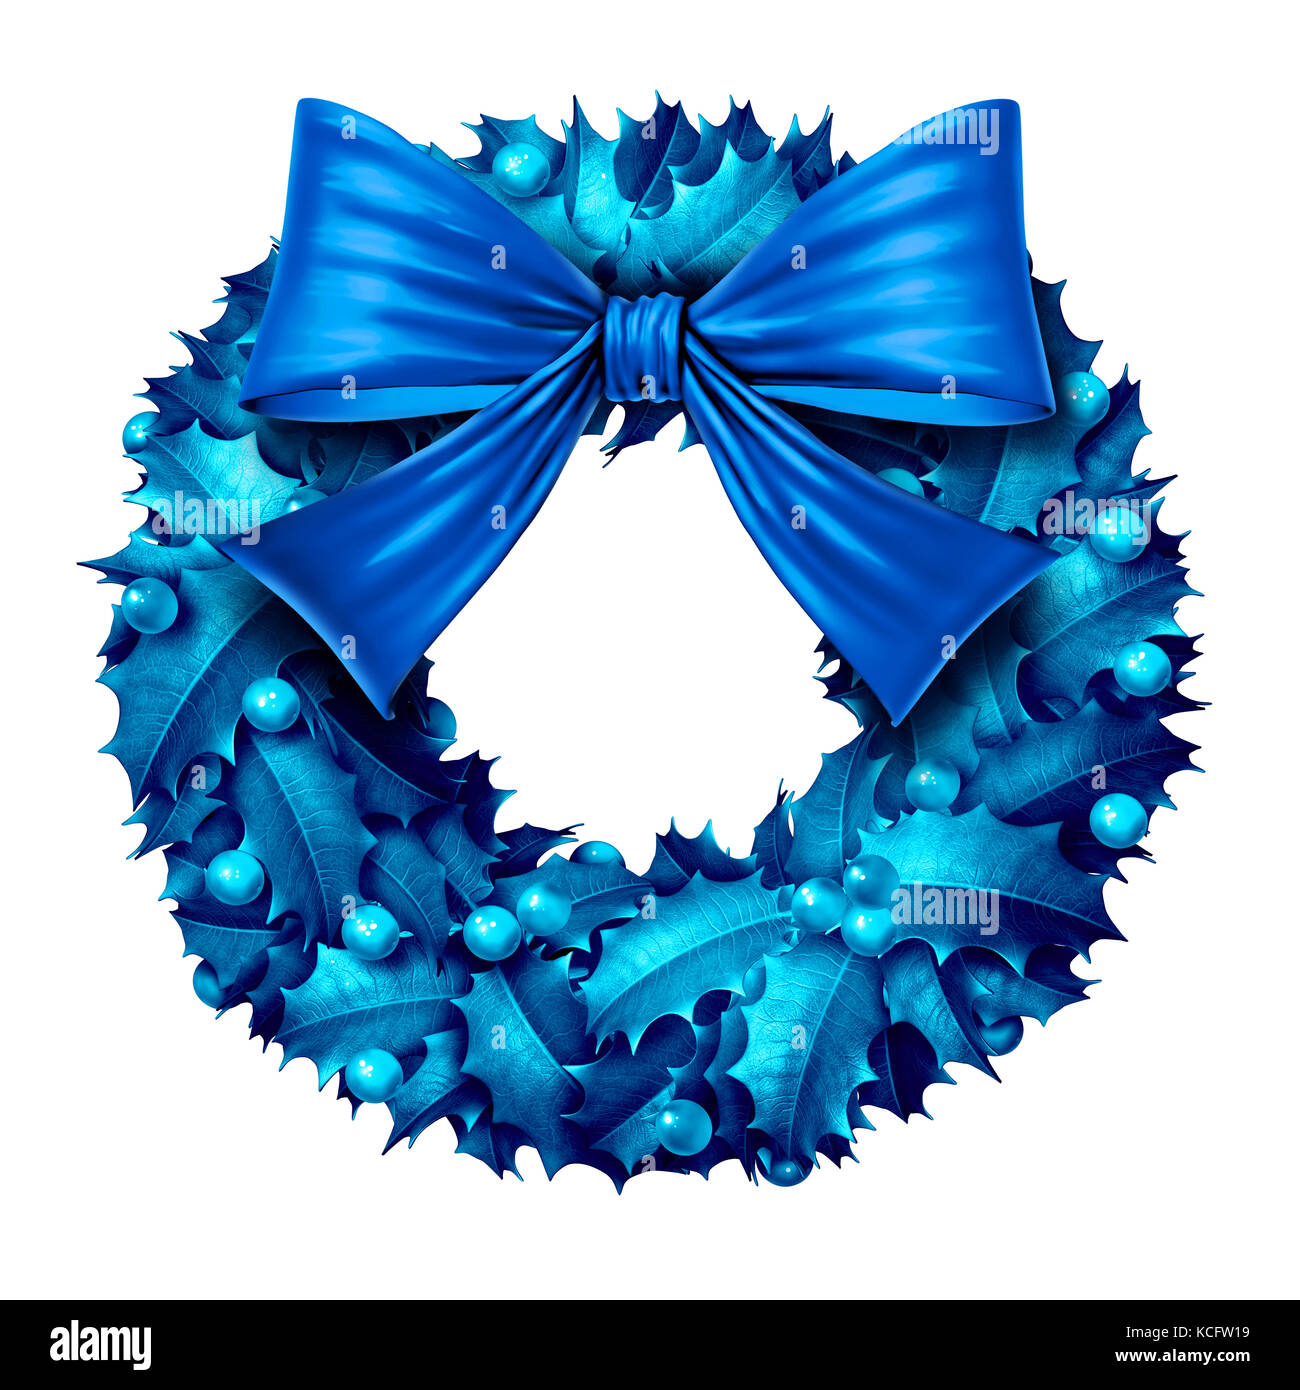 Corona blu isolata su uno sfondo bianco come oggetto decorativo per ornamenti natalizi invernali come illustrazione 3D. Foto Stock